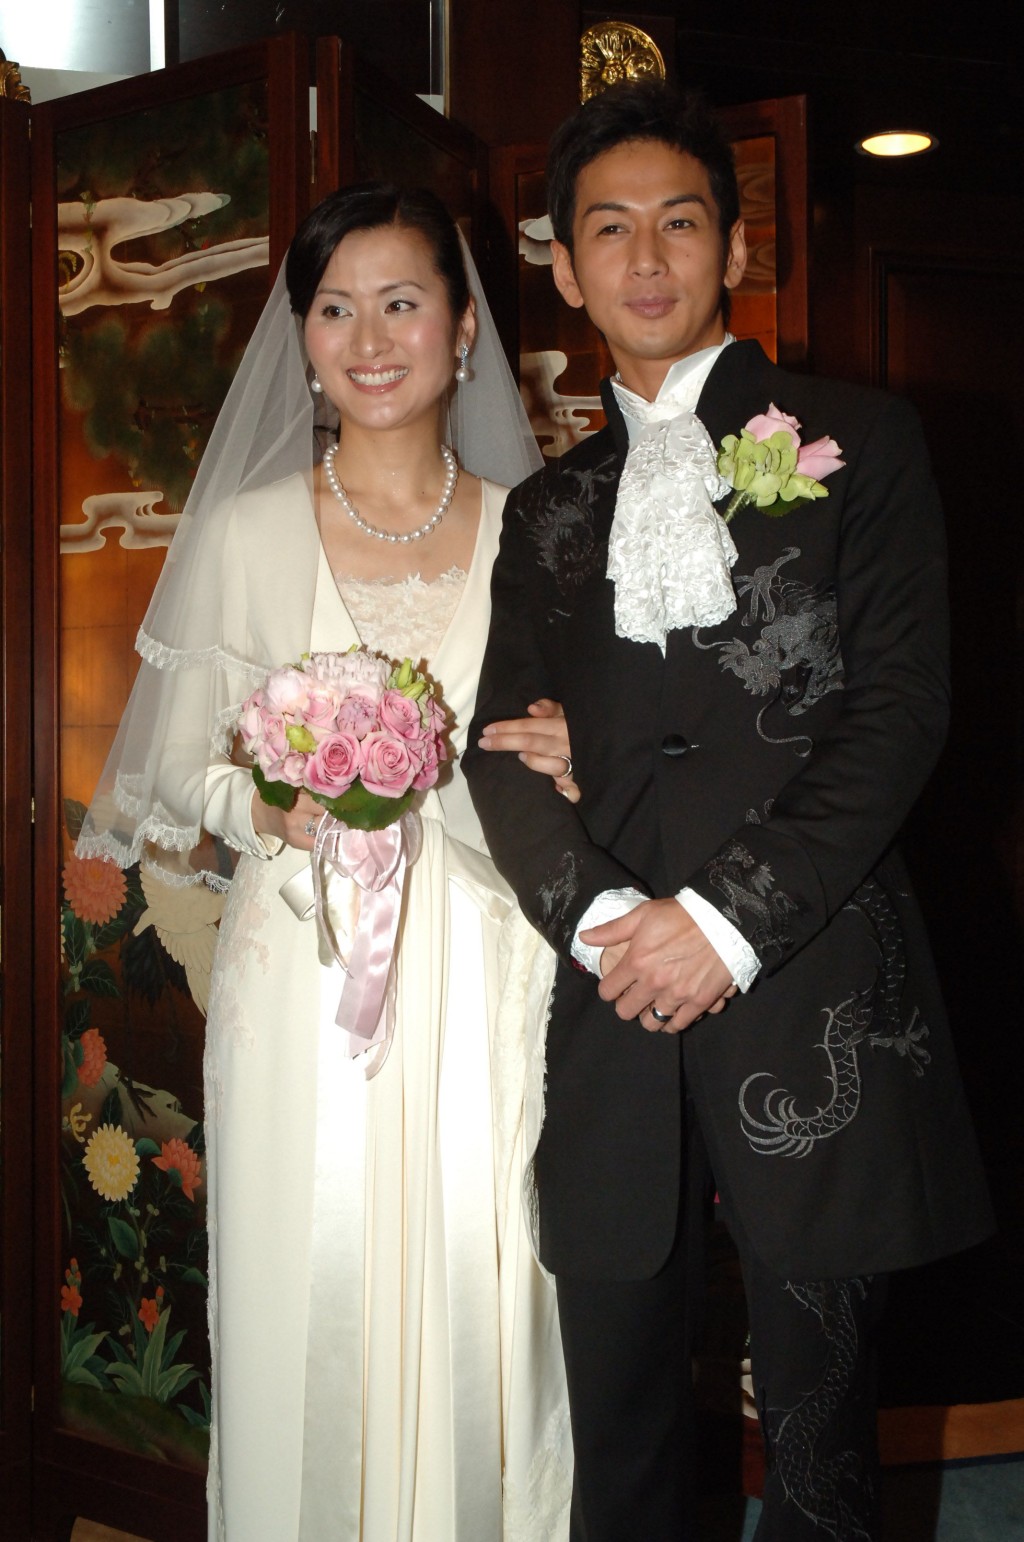 吳家樂與周蕙蕙於2006年結婚。